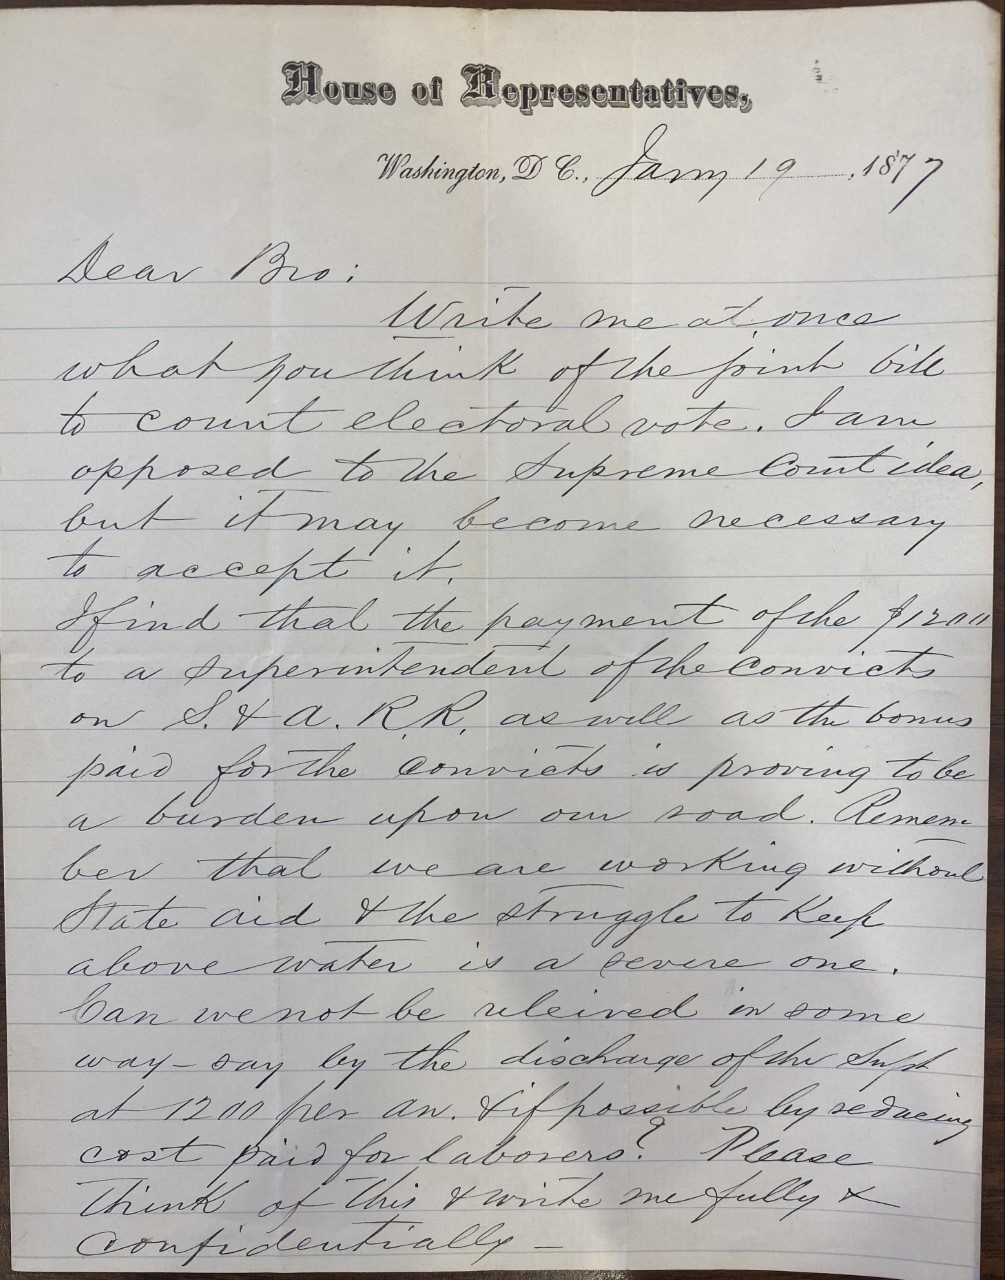 Robert B. Vance to ZBV, January 19, 1877